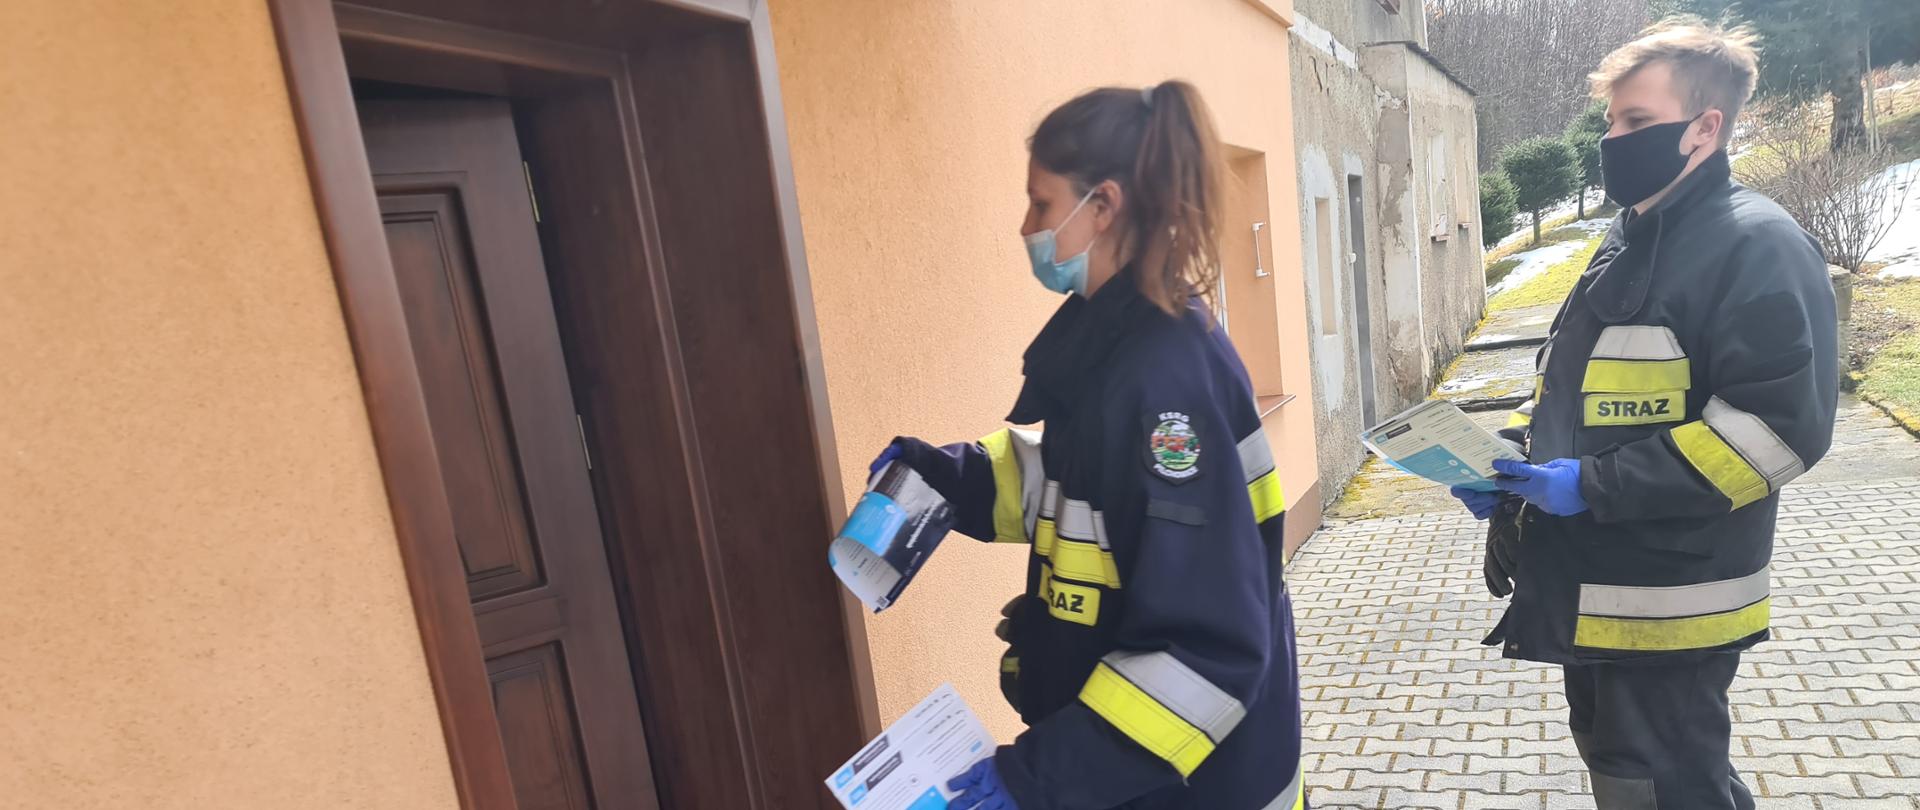 Zdjęcie przedstawia dwóch strażaków z jednostki Ochotniczej Straży Pożarnej w Pilchowicach, którzy roznoszą ulotki informacyjne dotyczące szczepień przeciwko Covid-19. Strażacy znajdują się przed budynkiem mieszkalnym. Zdjęcie obrazuje moment przekazania ulotek mieszkańcom.